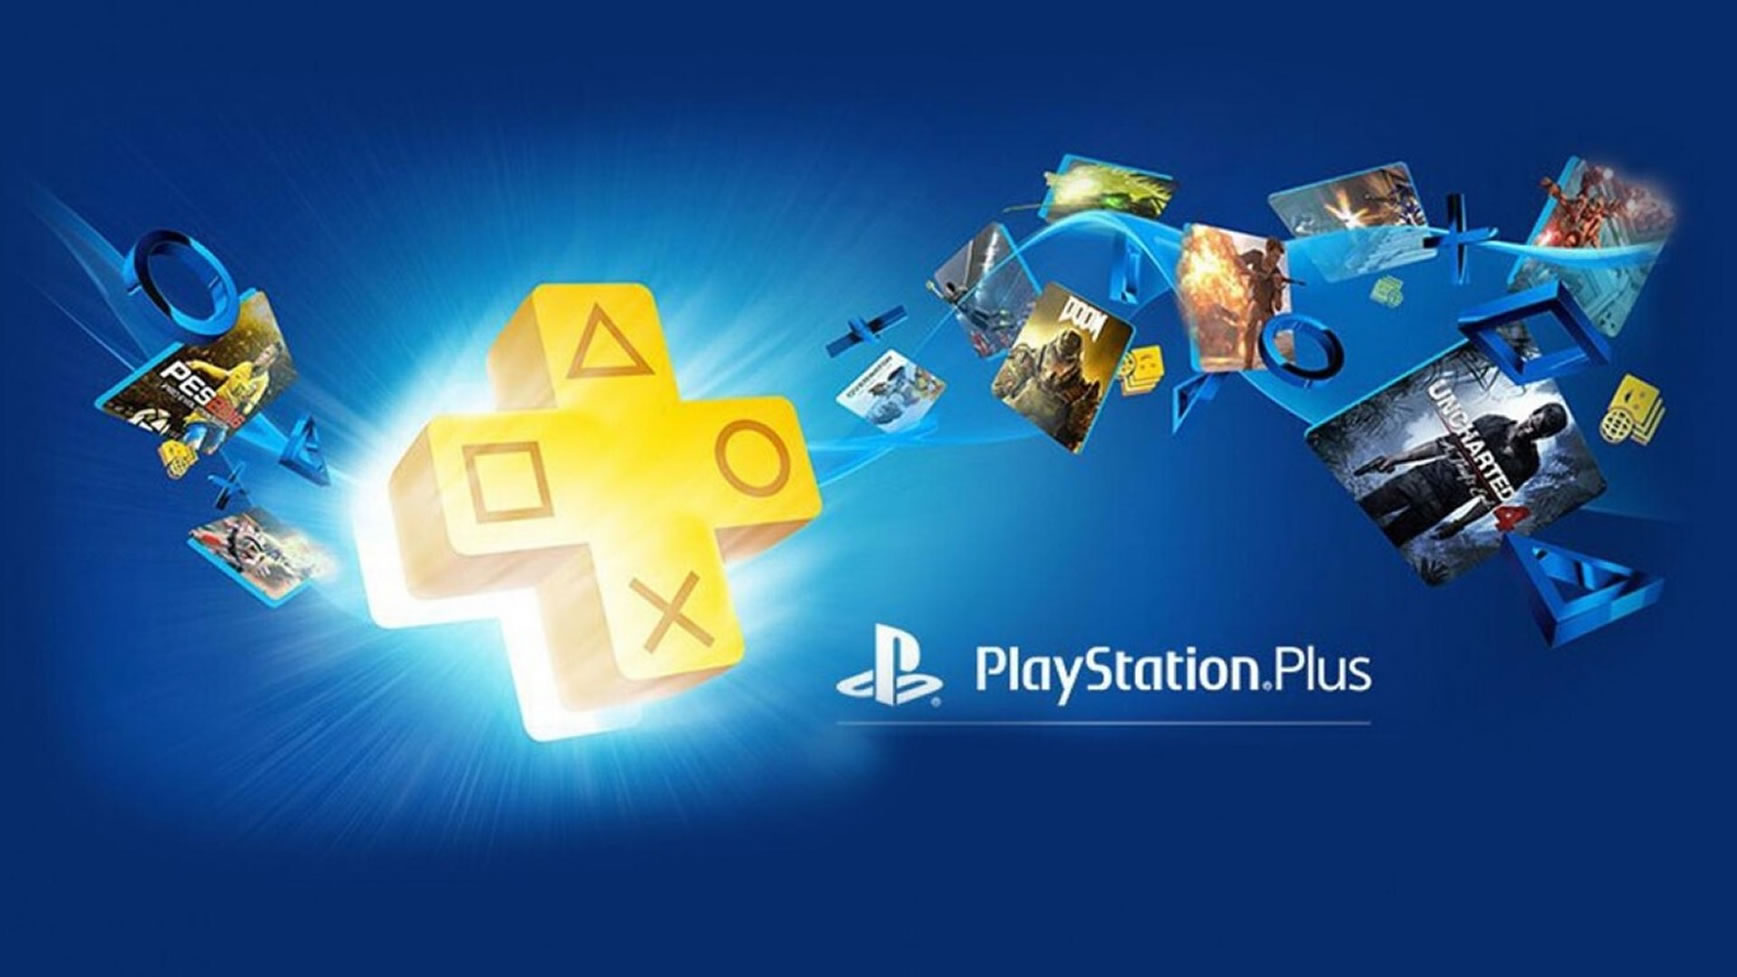 Fecha de lanzamientos precio y beneficios nuevo PlayStation Plus